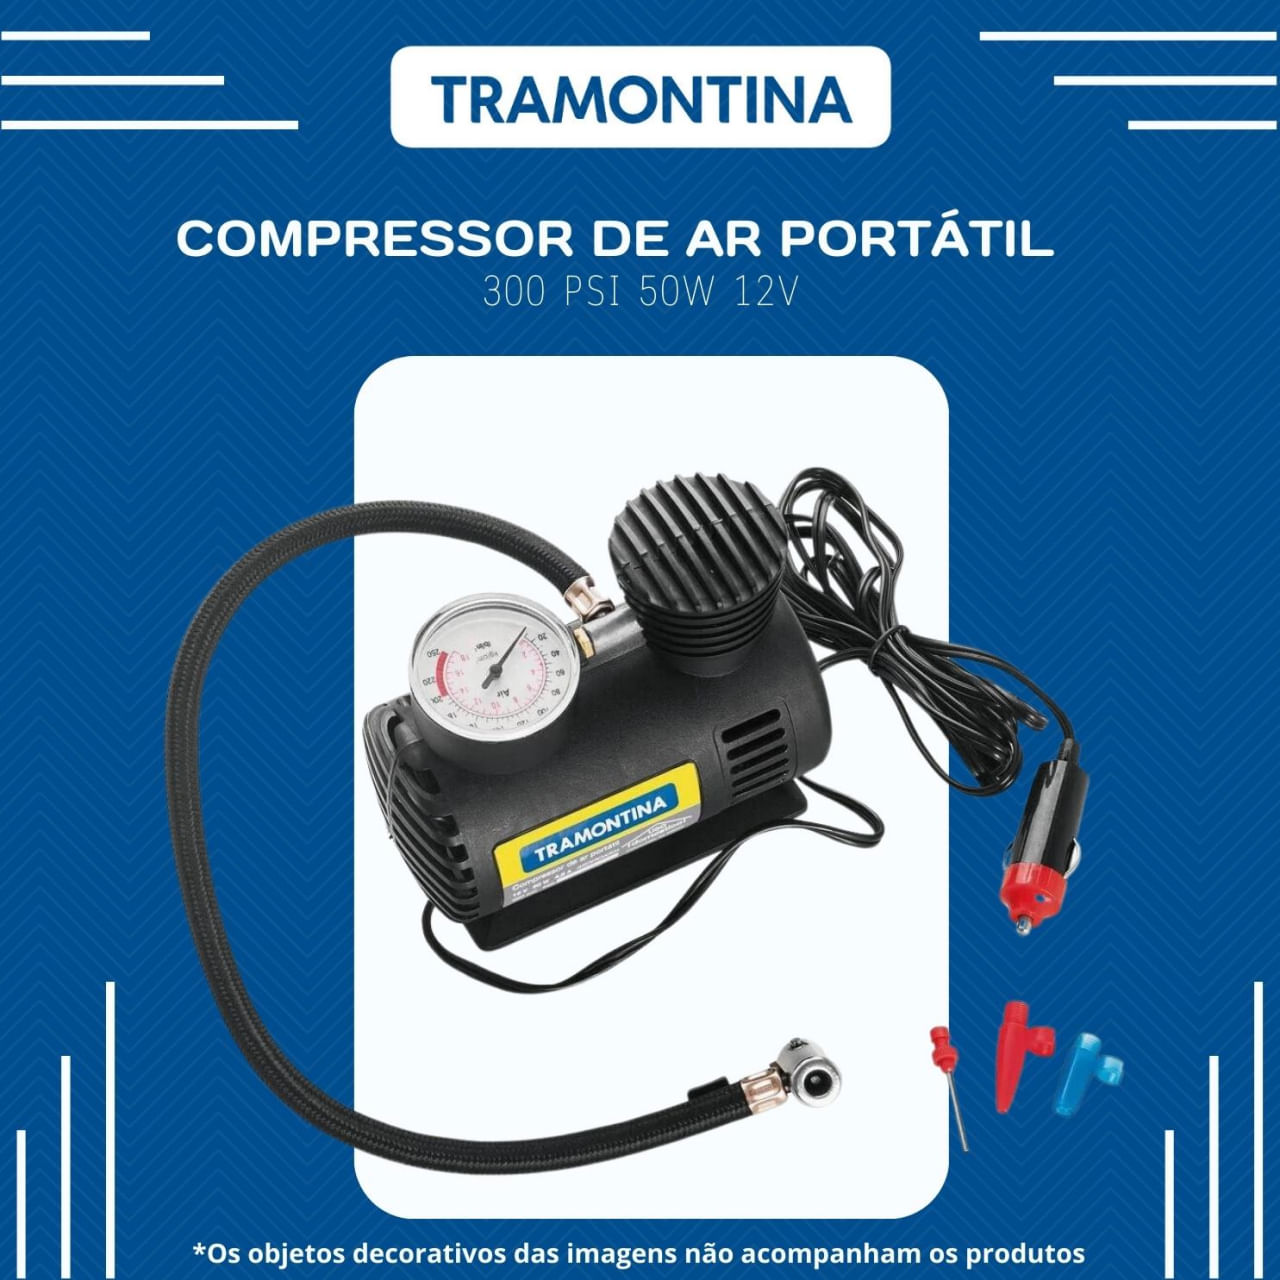 Tramontina Compressor Ar Portatil 12v, Potencia 50w, Pressao